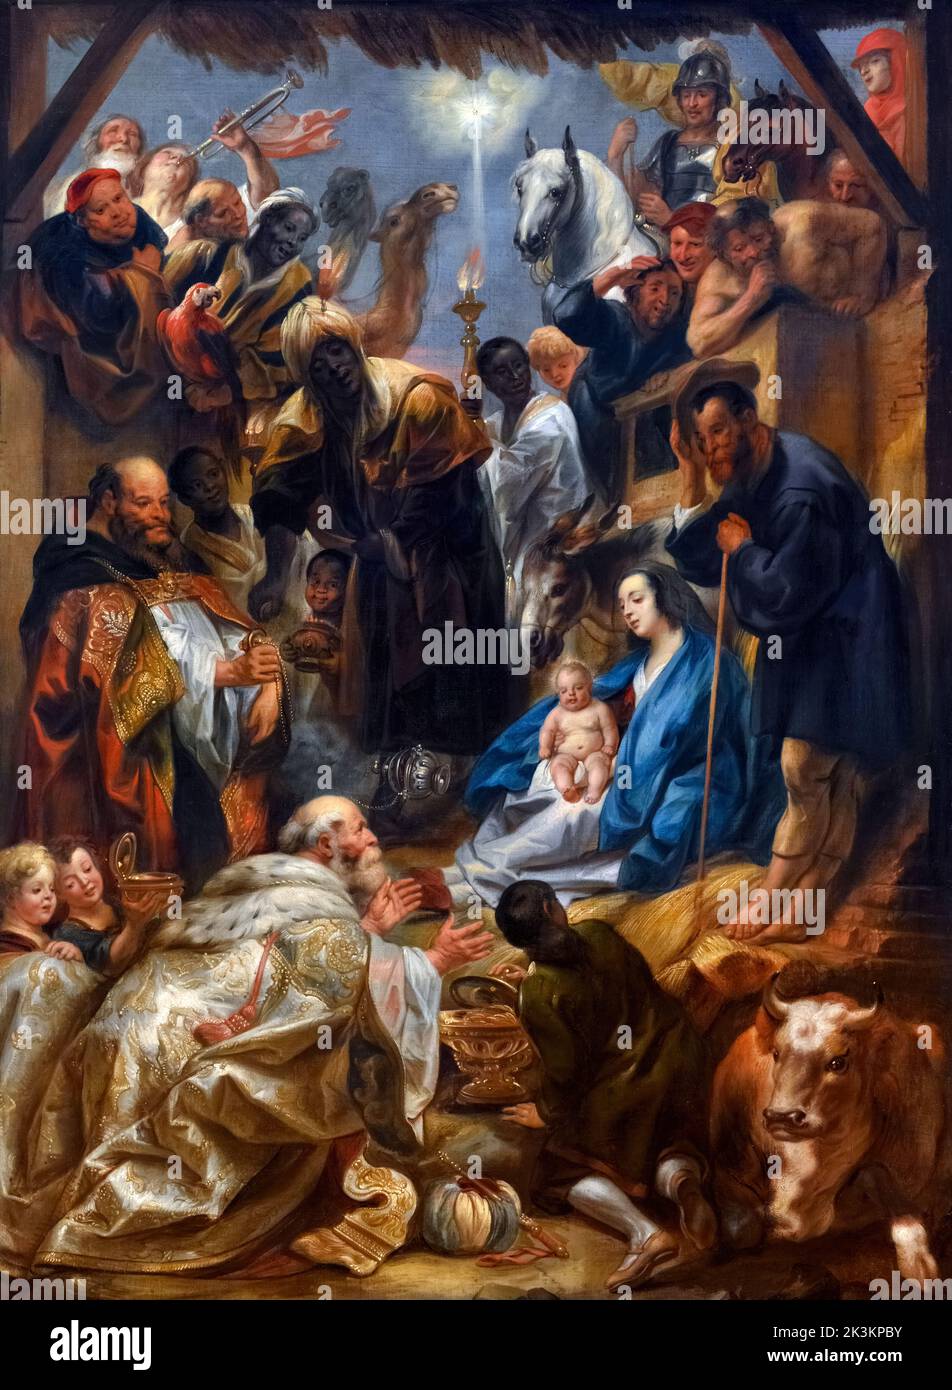 L'adoration des Mages par Jacob Jordaens (1593-1678), huile sur toile, c. 1643-44 Banque D'Images